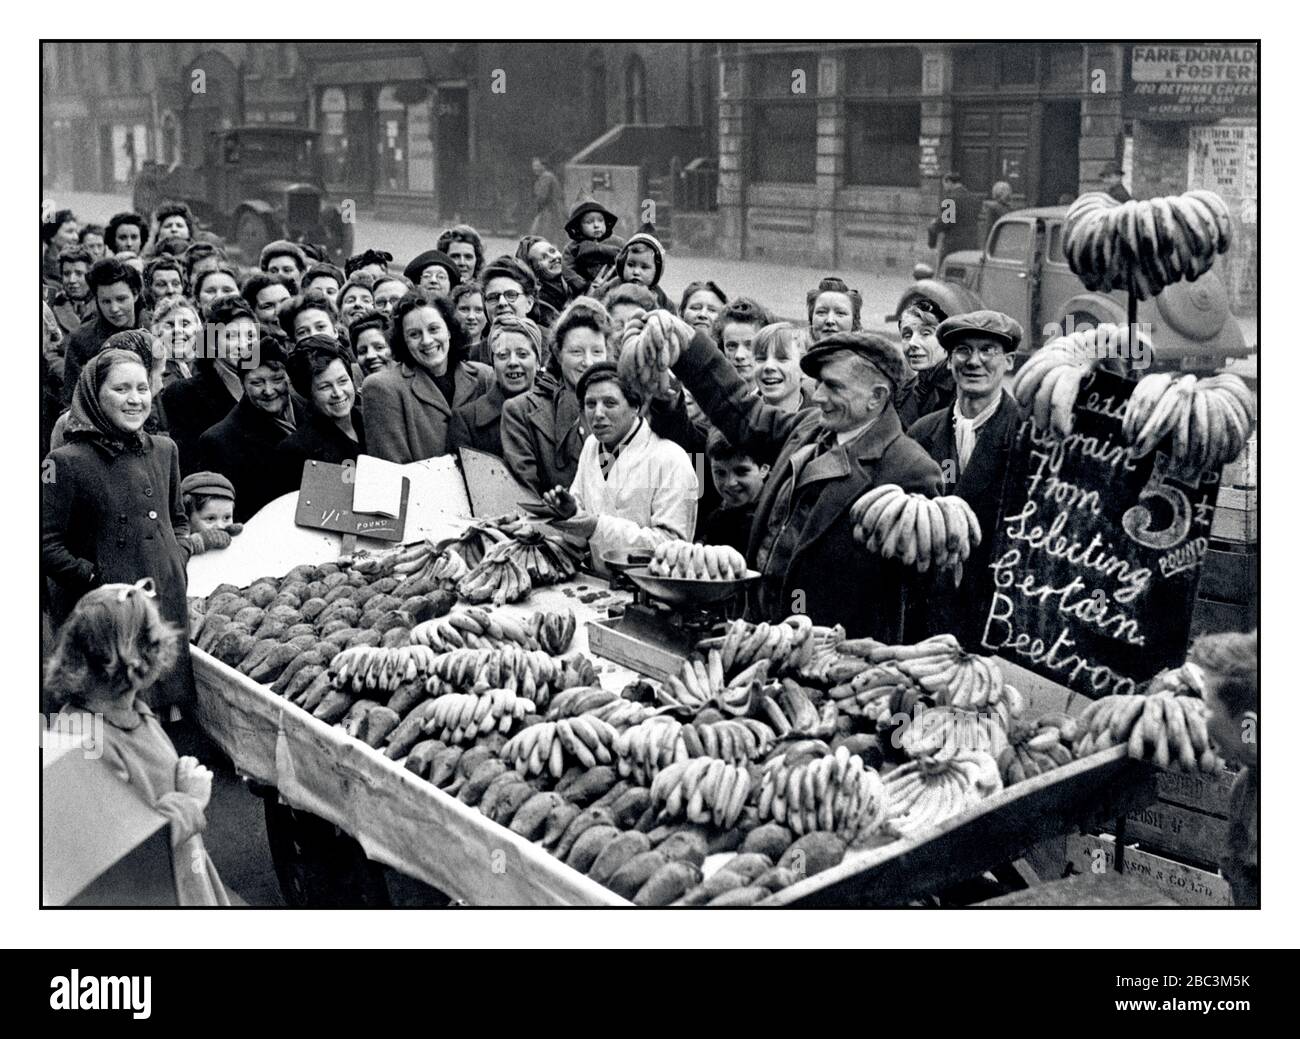 Vintage-Archiv 1940s Food Rationing Market Stall 1946 Post war WW2 Frische Bananen und Rote Beete werden in East End London verkauft, mit einer Menge sehr eifriger Kunden rund um den Stall Bethnal Green London UK Stockfoto